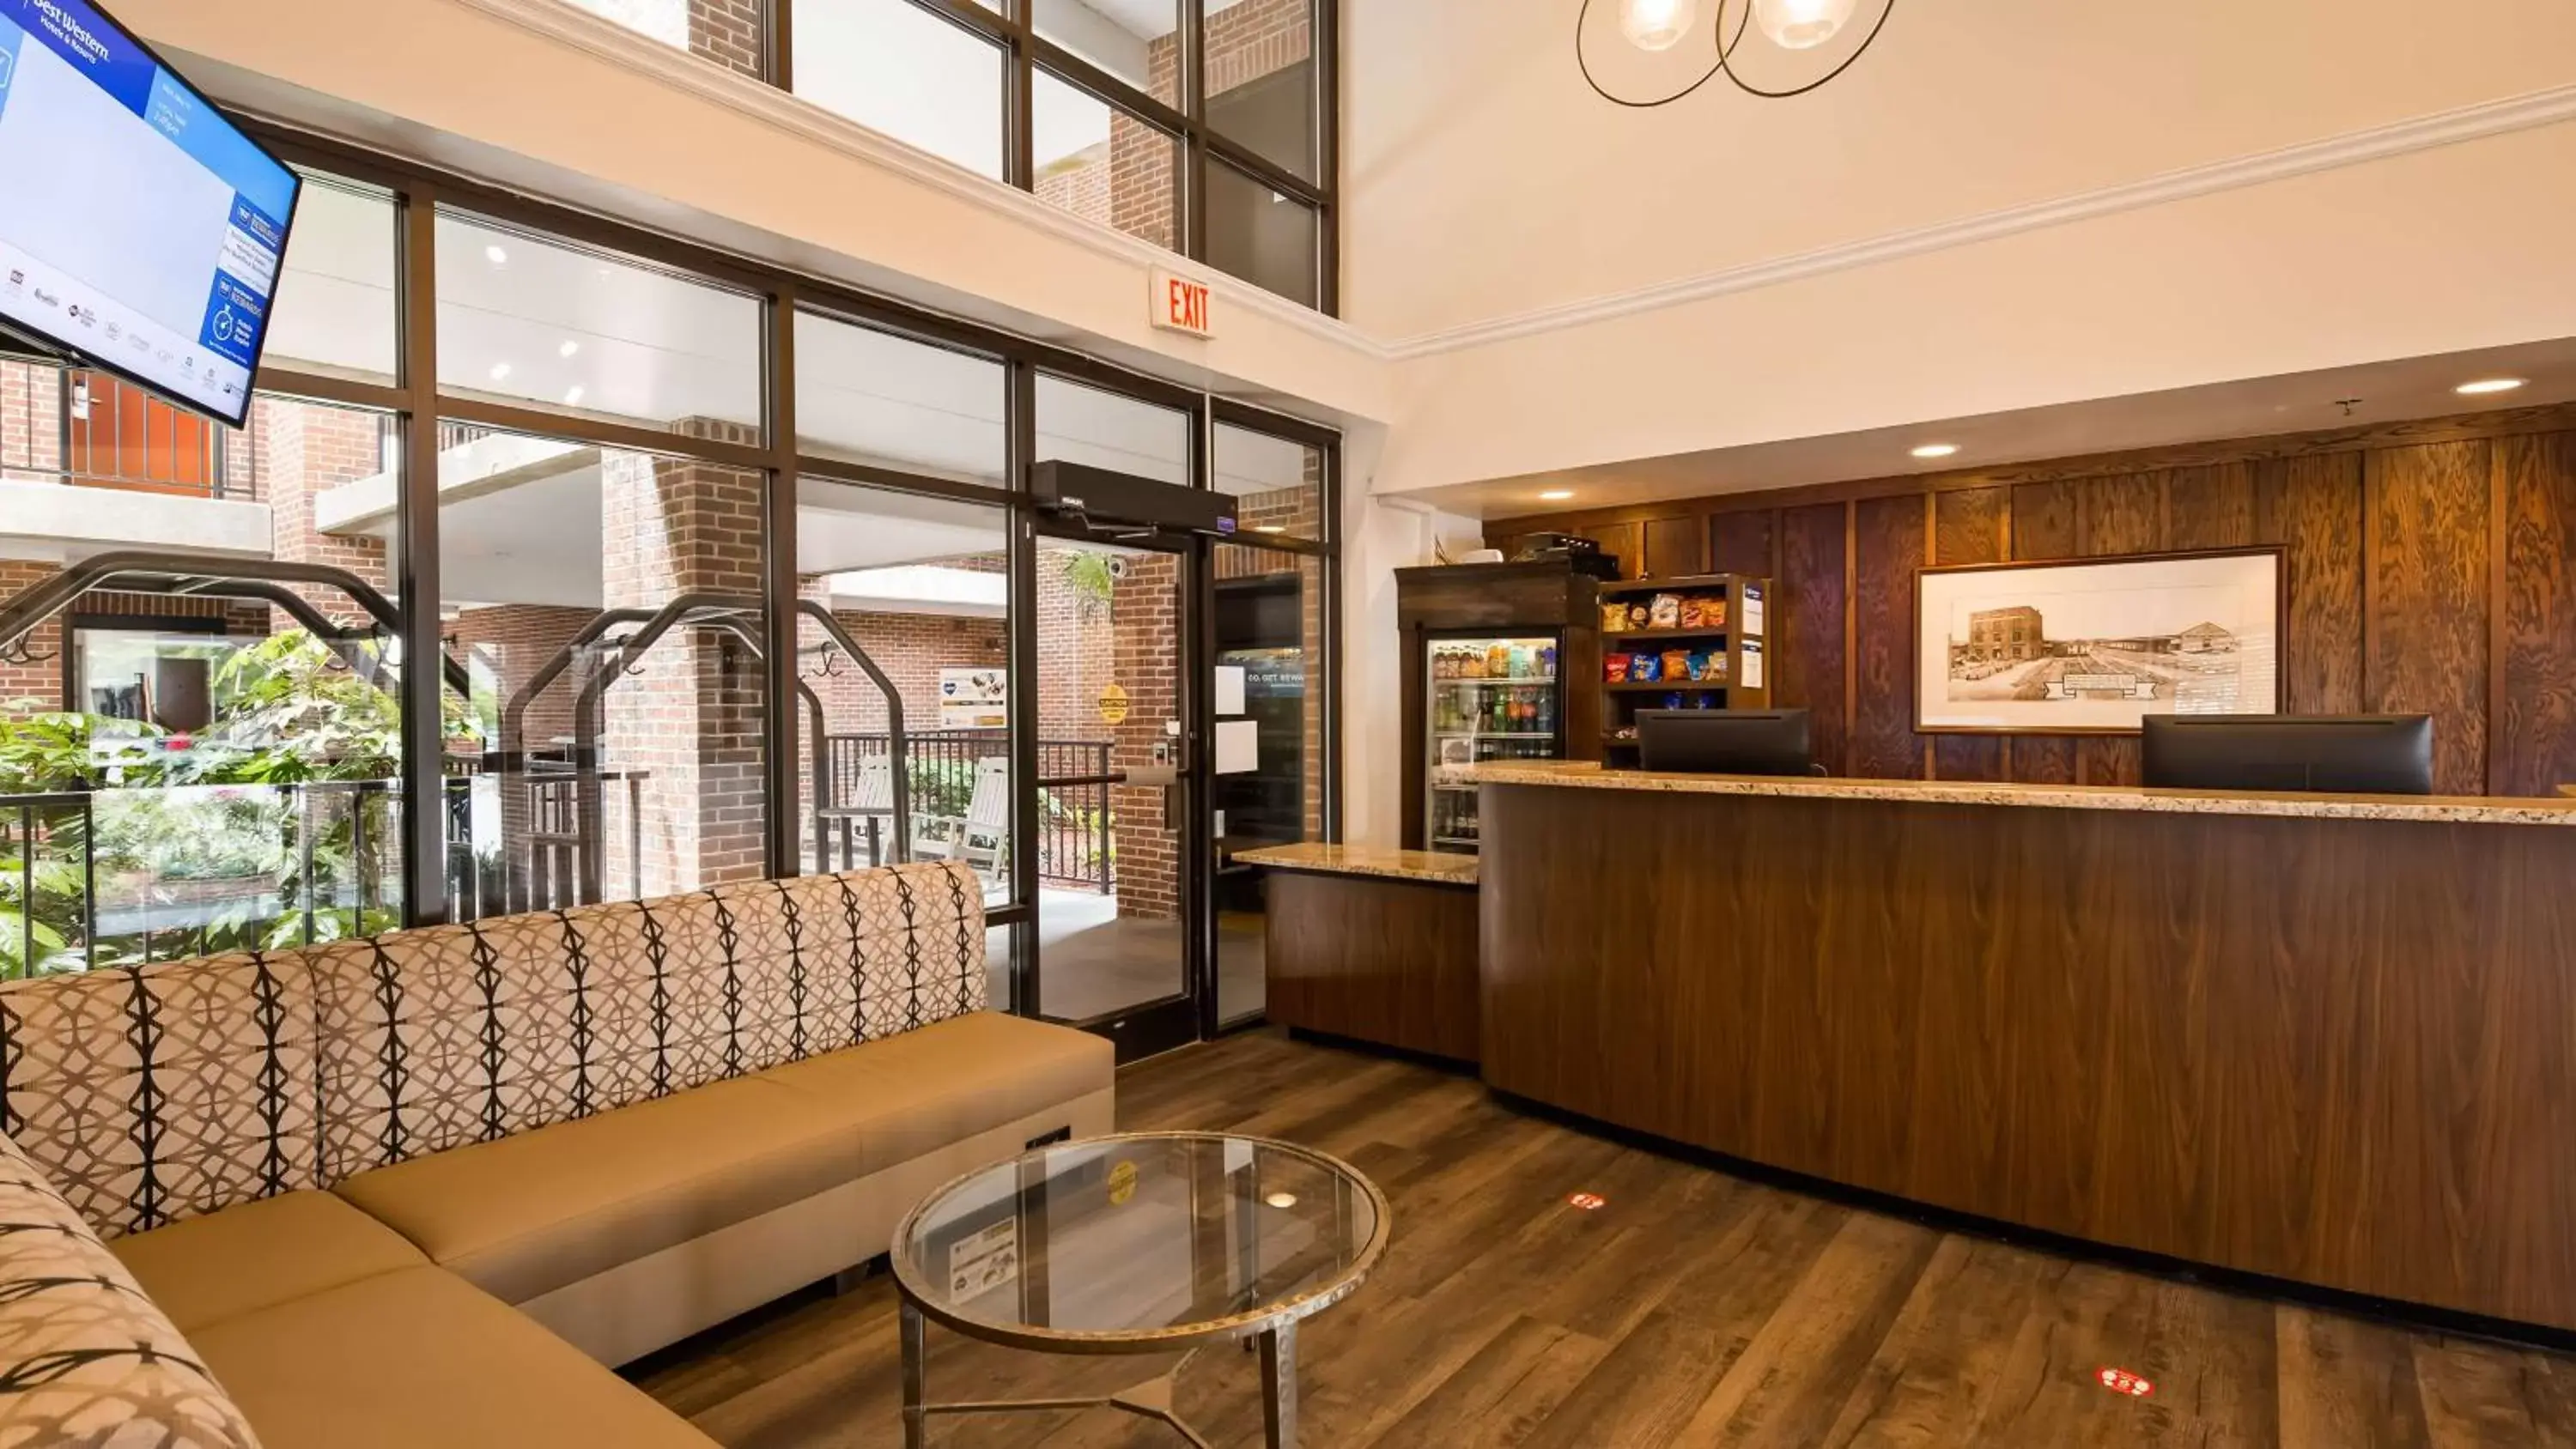 Lobby or reception, Lobby/Reception in Best Western Plus Coastline Inn